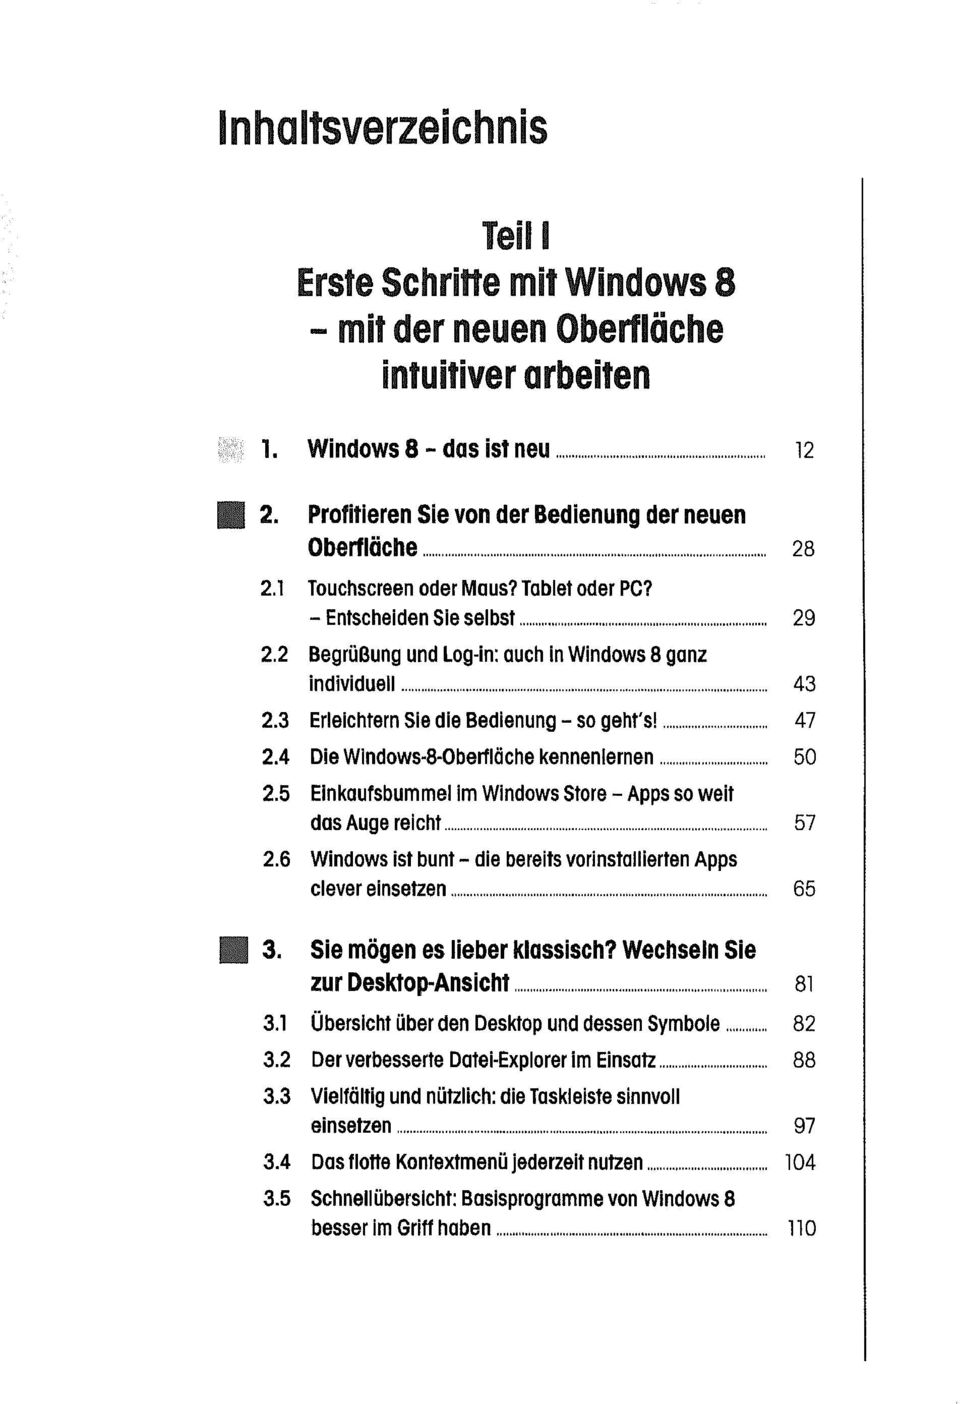 3 Erleichtern Sie die Bedienung so geht's! 47 2.4 Die Windows8Oberfläche kennenlernen 50 2.5 Einkaufsbummel im Windows Store so weit das Auge reicht 57 2.